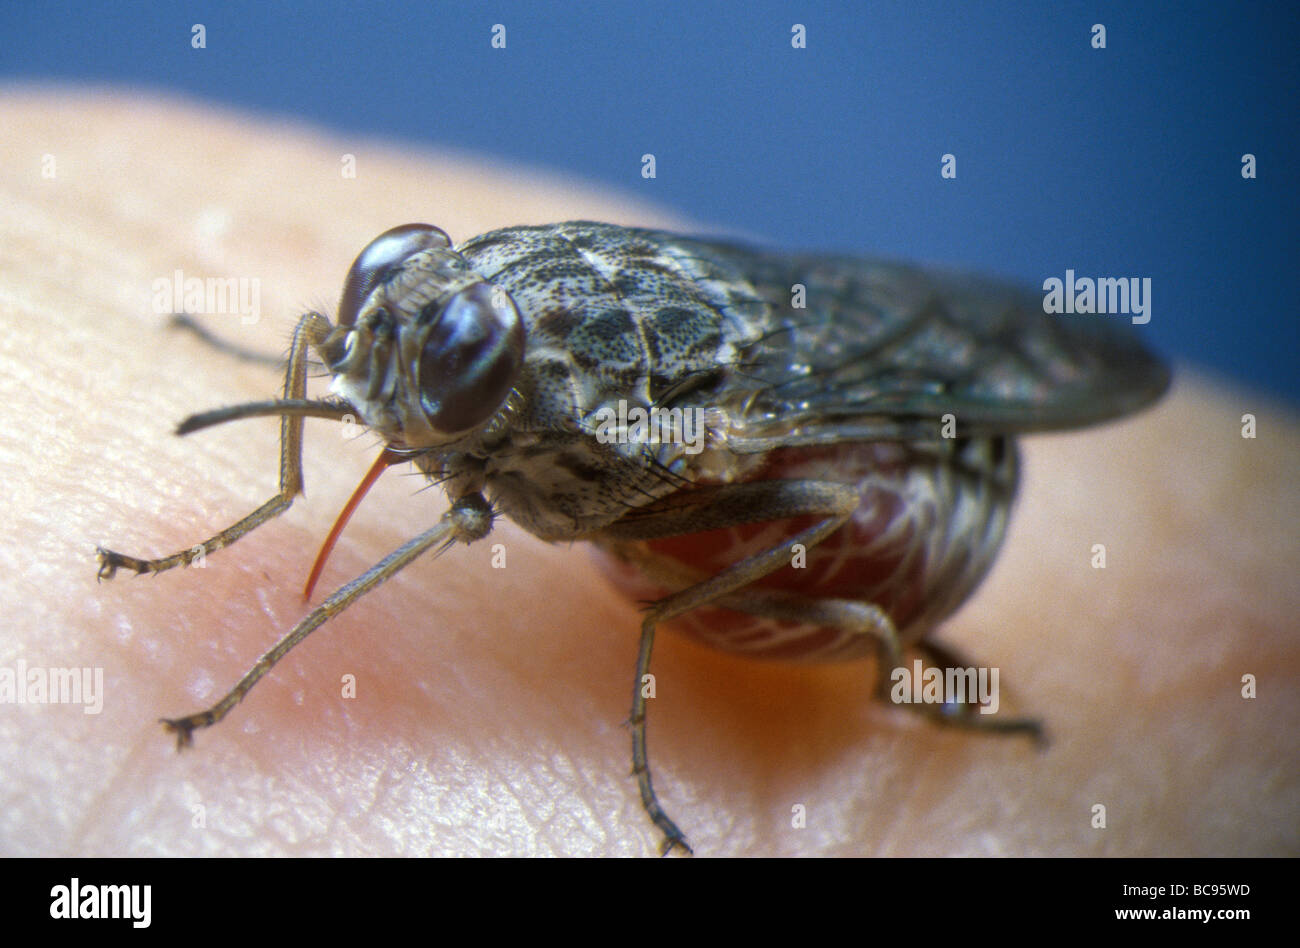 Mosca Tsetse, Glossina - alimentazione del sangue umano. Tsetse mosche sono il vettore per diversi tropicali malattie umane. Foto Stock